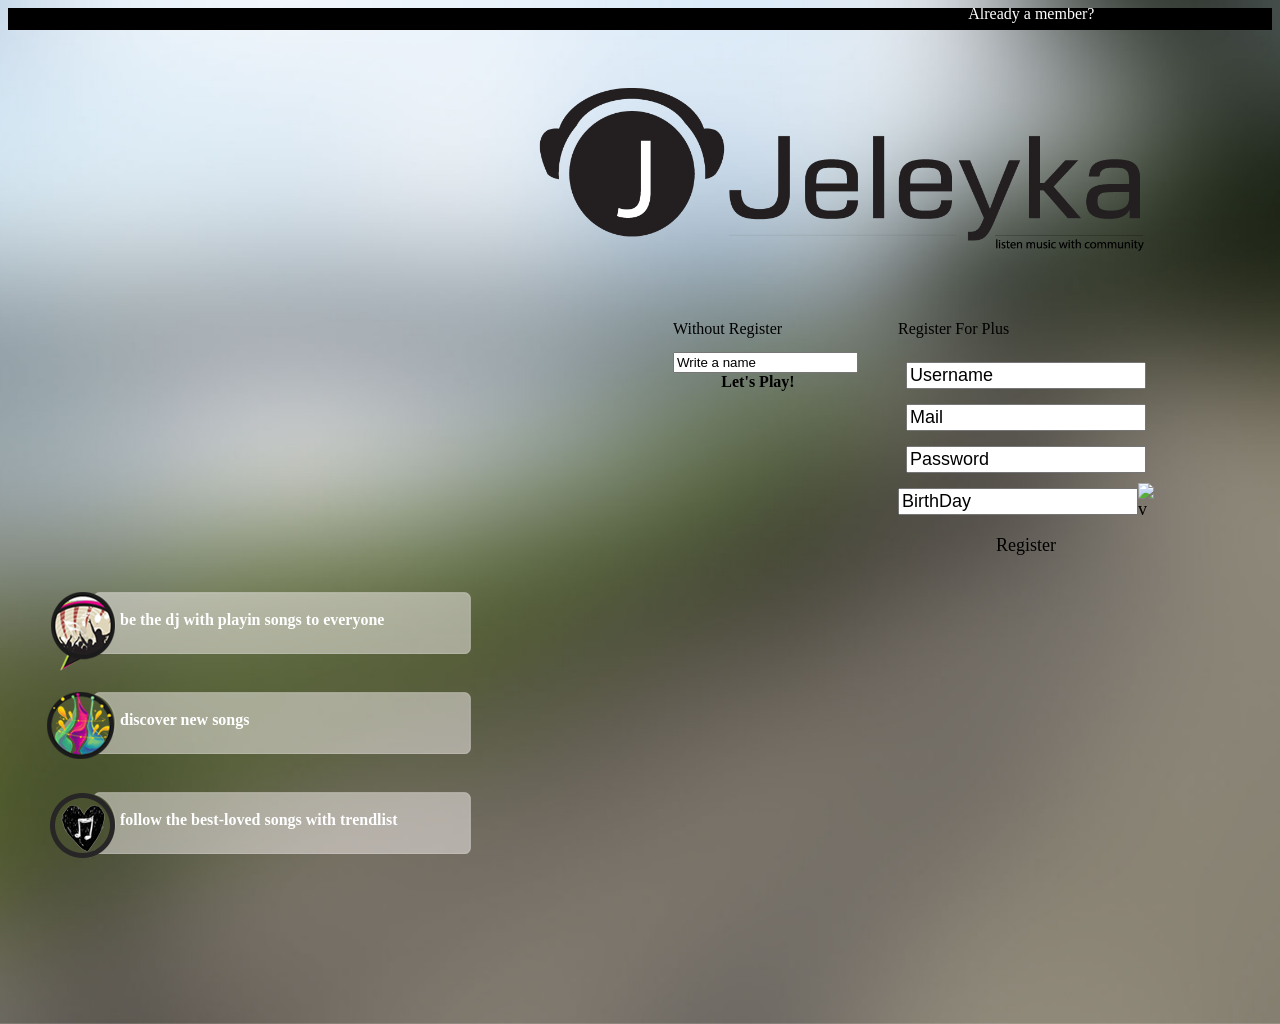 jeleyka.com